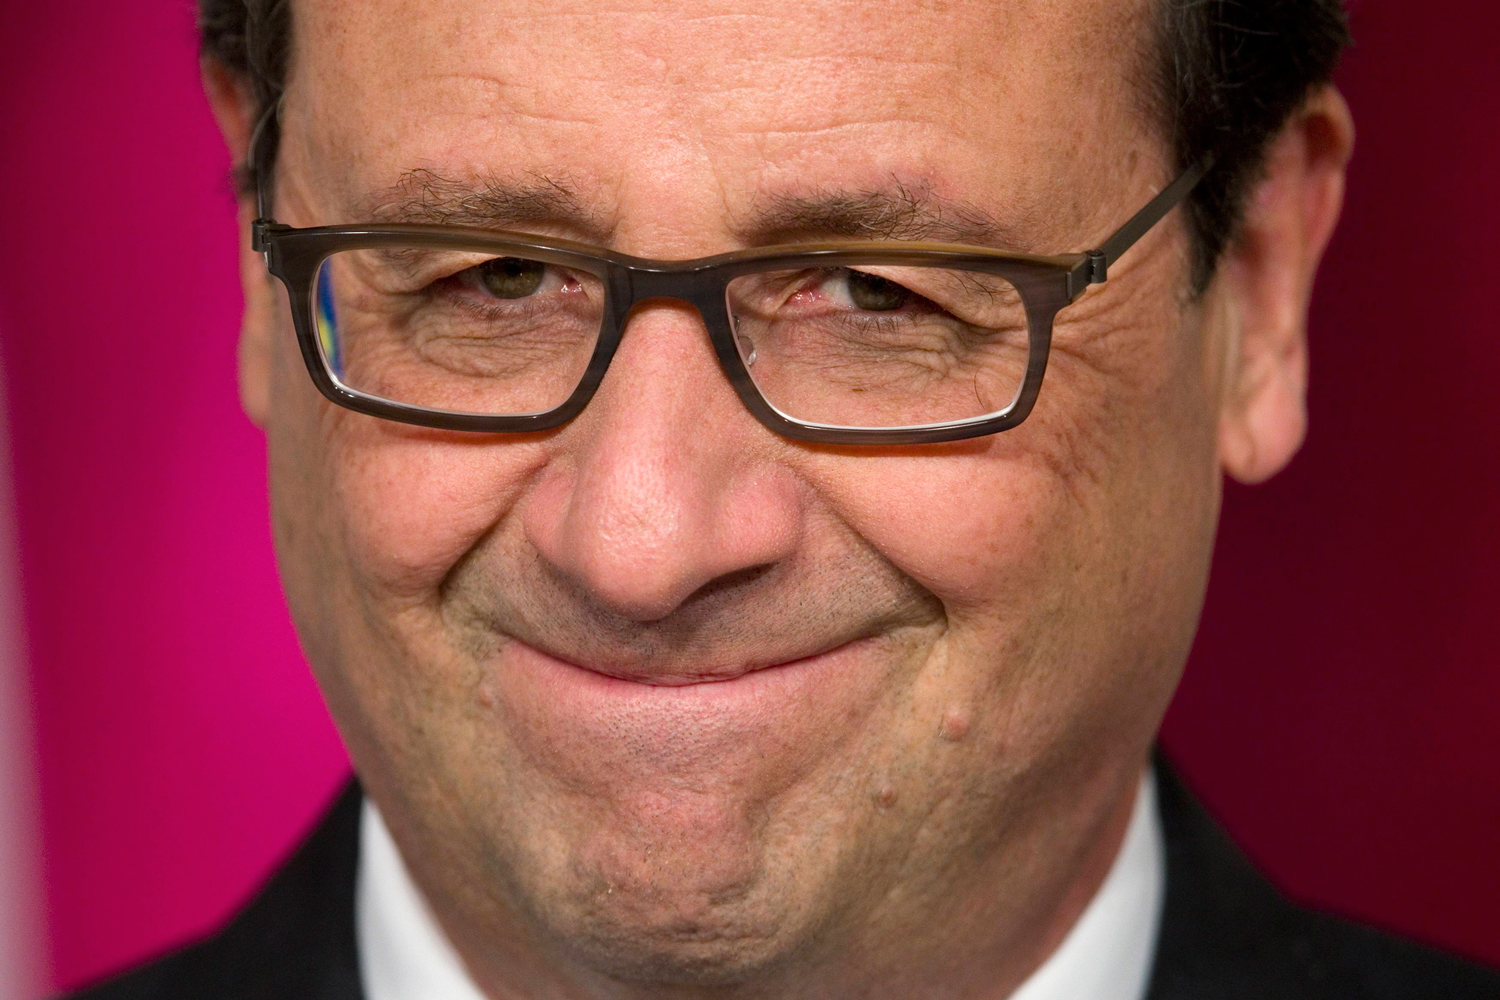 Las nuevas gafas de Hollande causan revuelo por no ser francesas